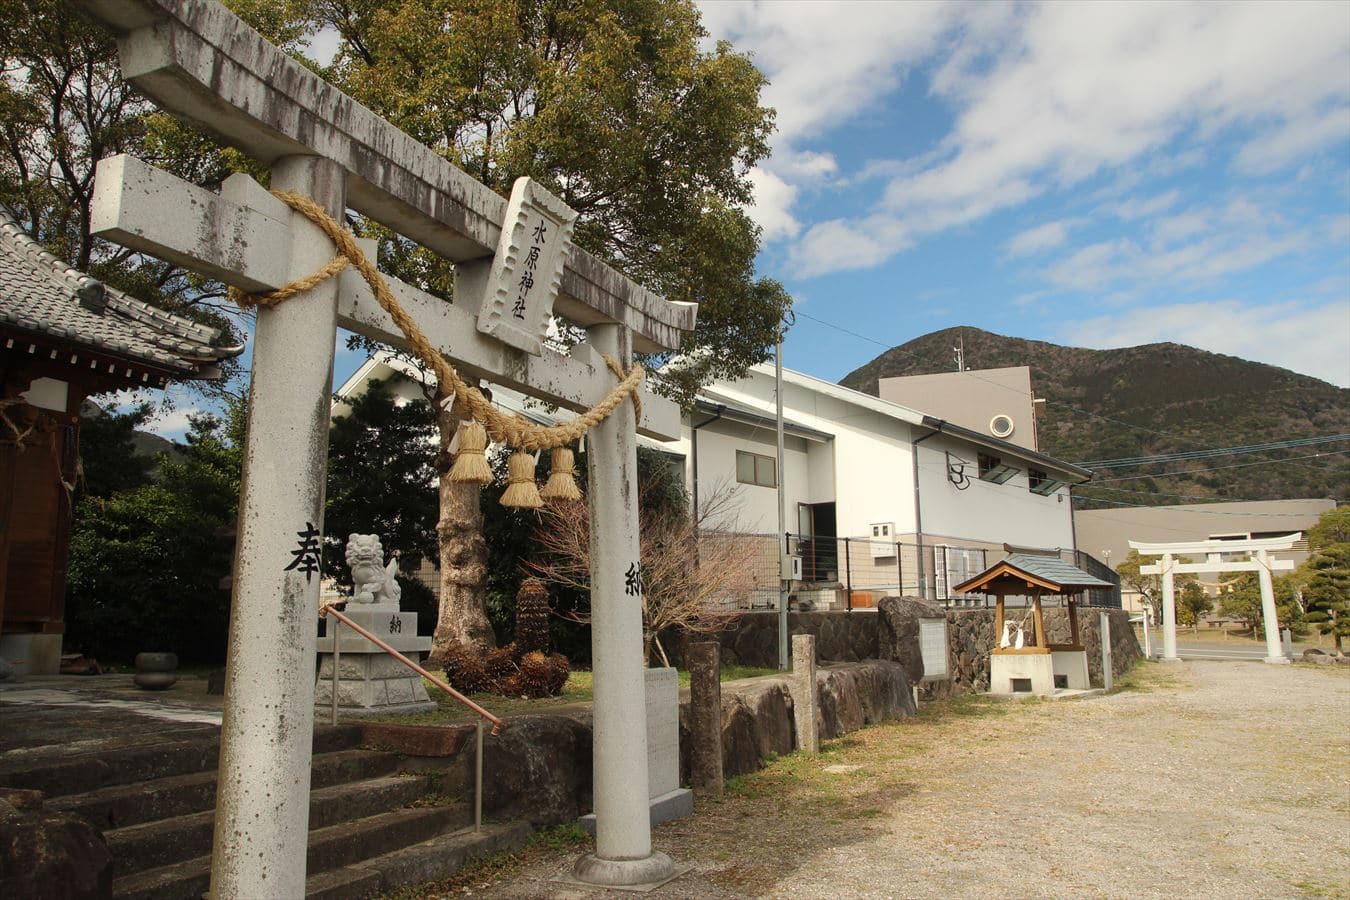 水原神社